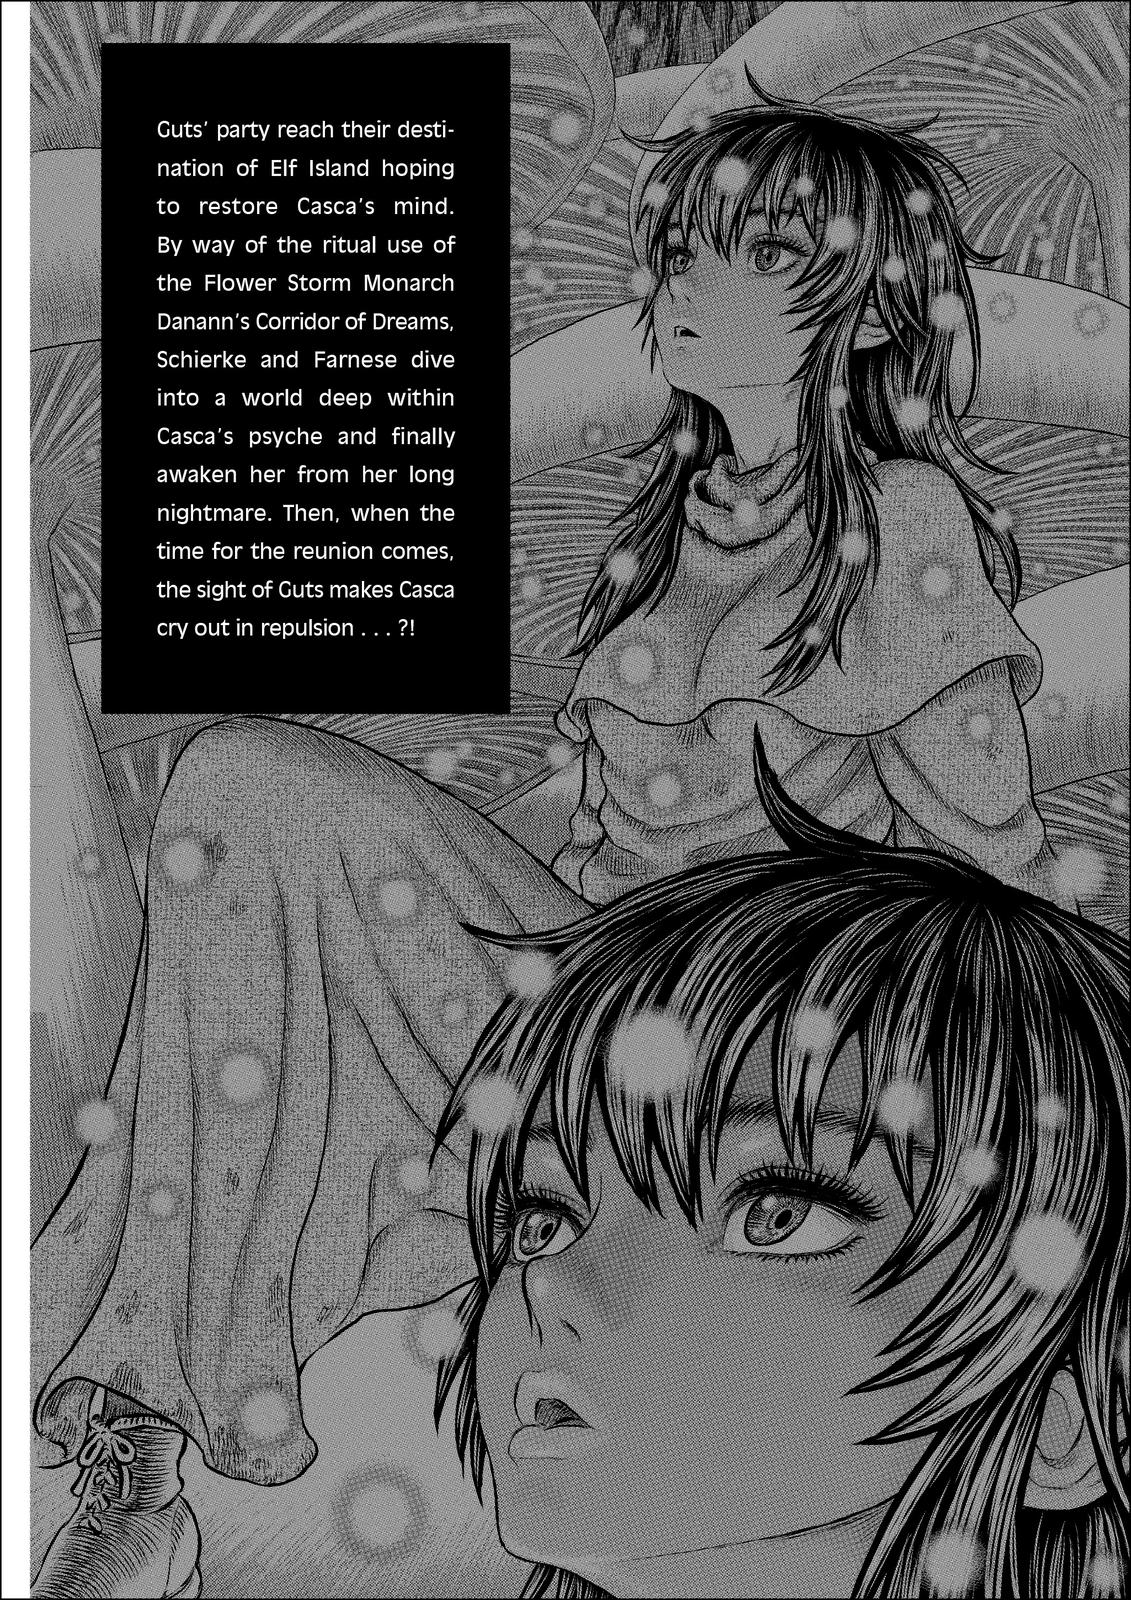 Berserk Manga Chapter 358 image 07